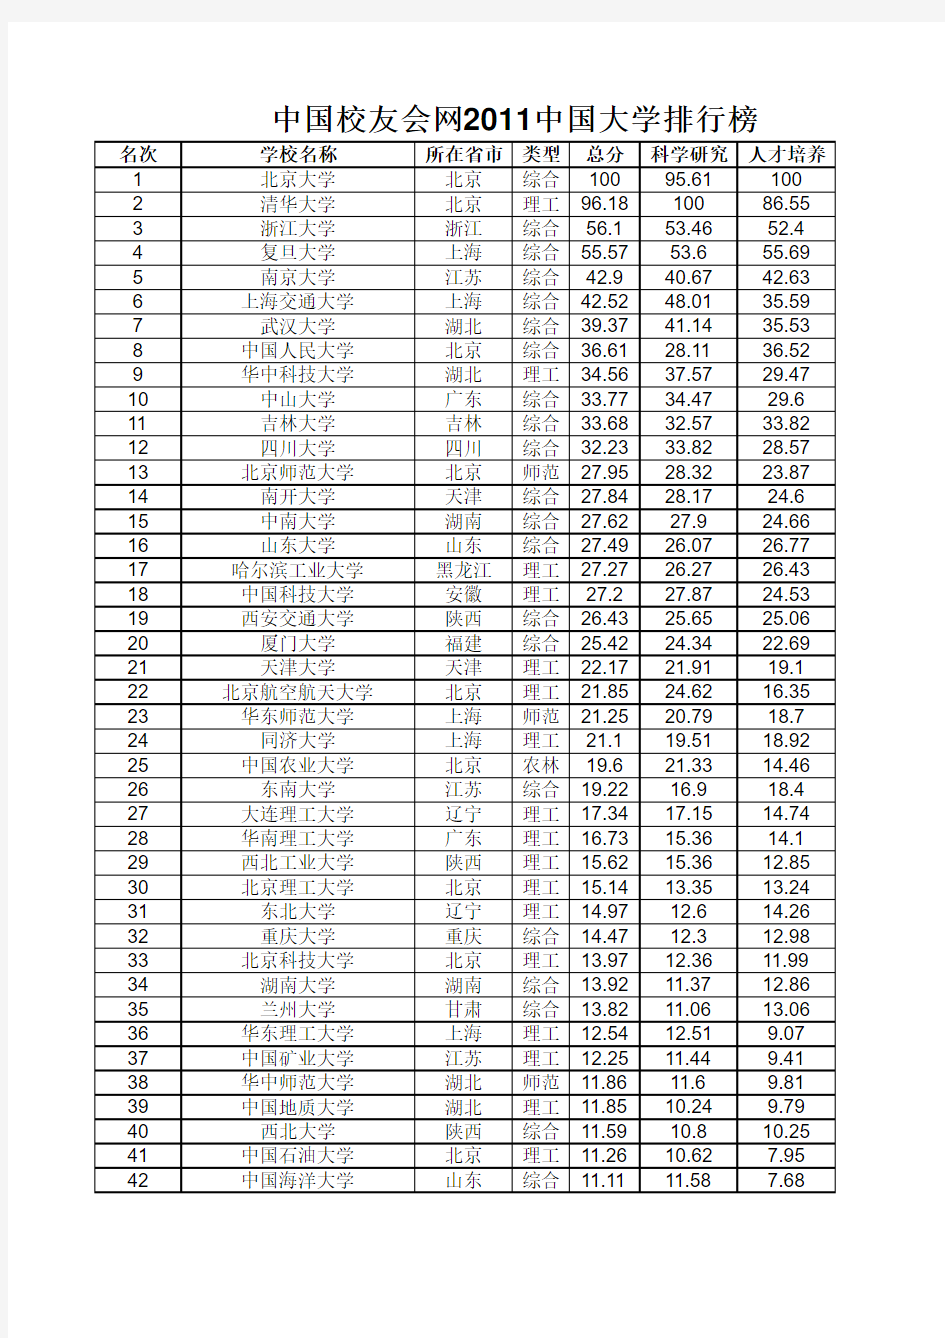 2011中国大学排行榜(1-600)完全版